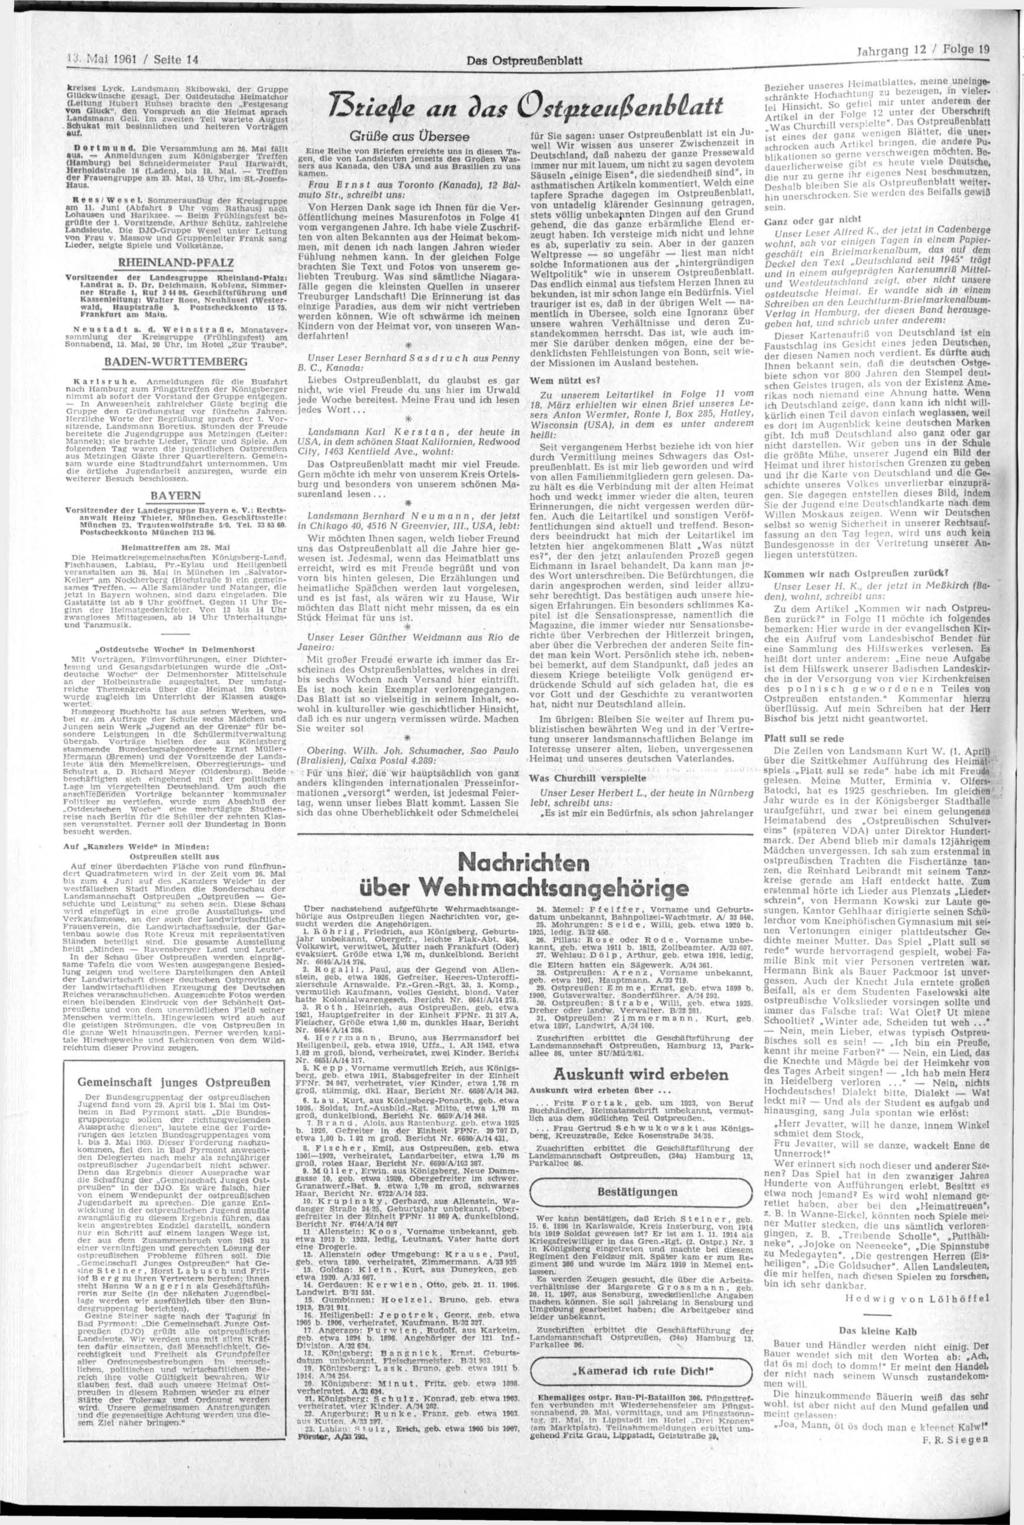 13. Mai 1961 / Seite 14 Da«Ostpreußenblatt Jahrgang 12 / Folge 19 krelses Lyck, Landsmann Skibowski, der Gruppe Glückwünsche gesagt.